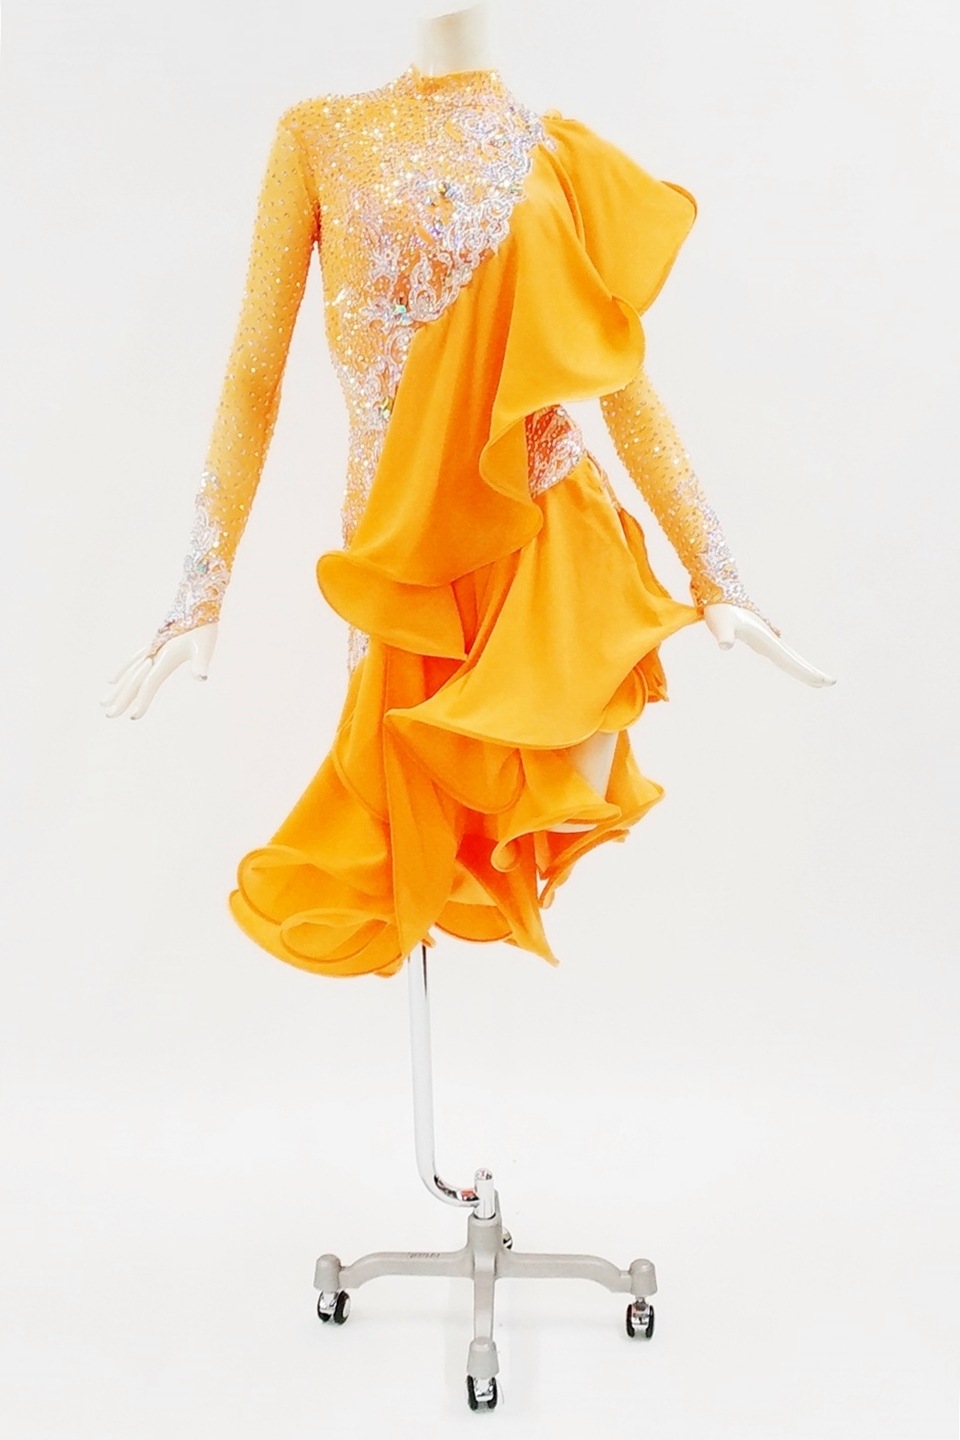 19,995円ラテンダンス競技社交ドレス高級オレンジイエロー黄色タッセル